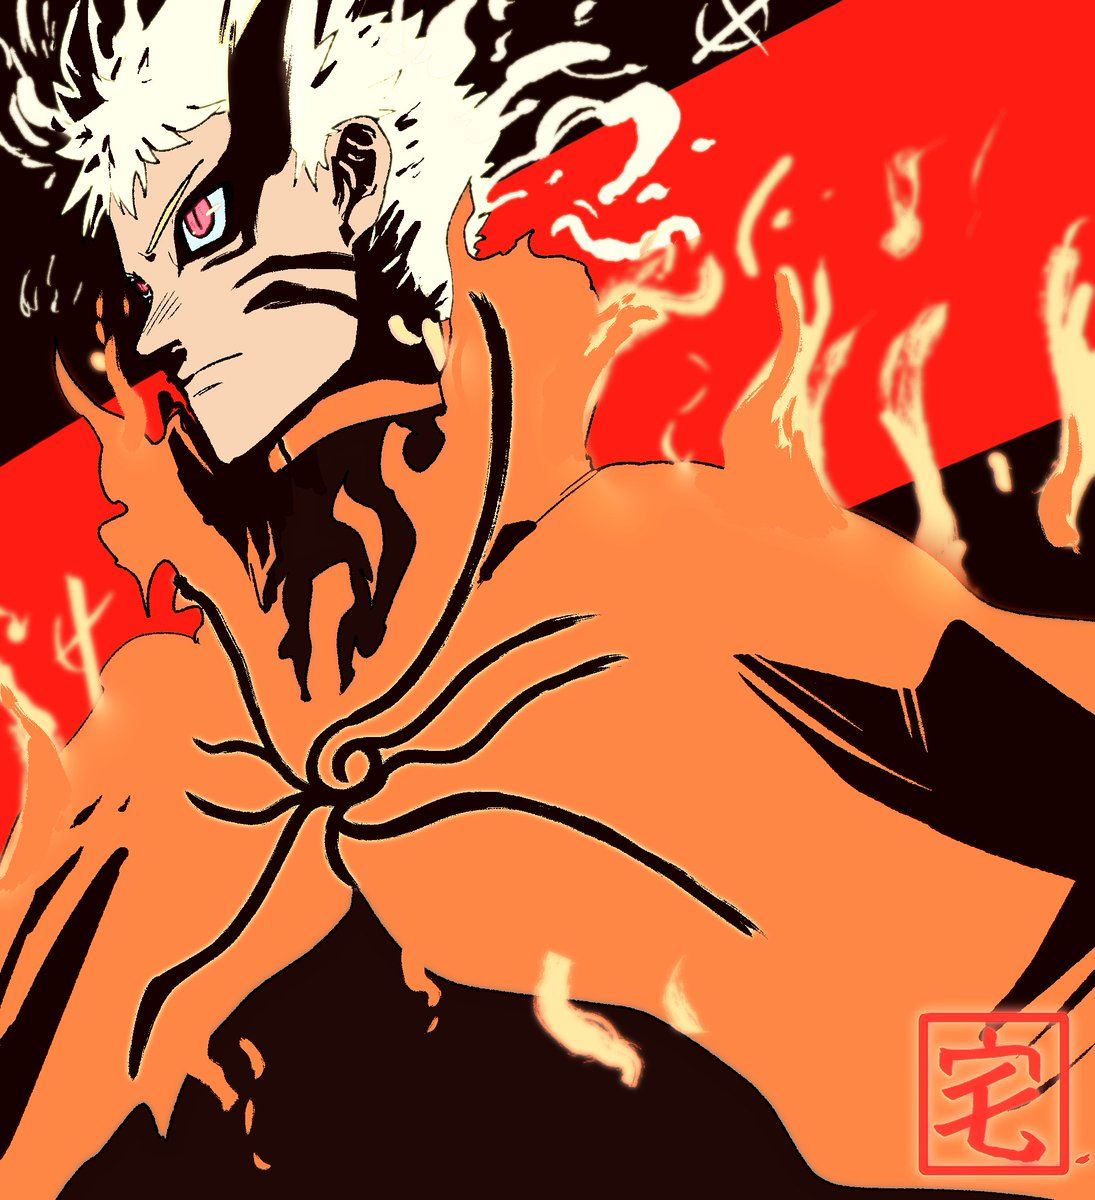 ✟ᵀᴬᴷᵁ✟ Hokage's Final stand. Kurama and Naruto, BARYON MODE !